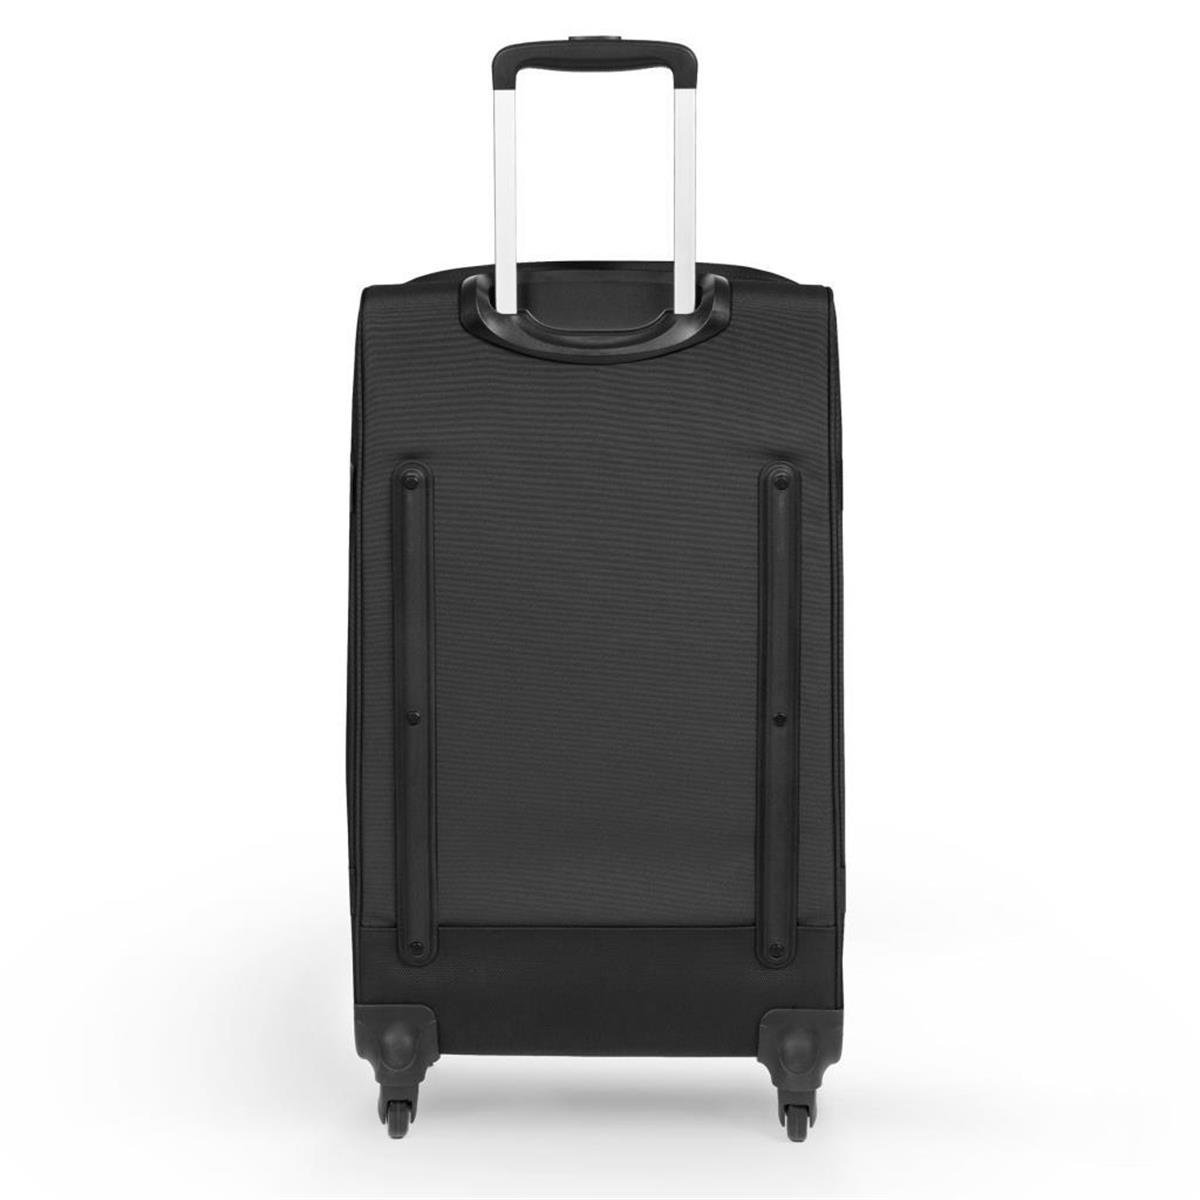 Bavul Valiz Modelleri ve Fiyatları | Bee.com.tr